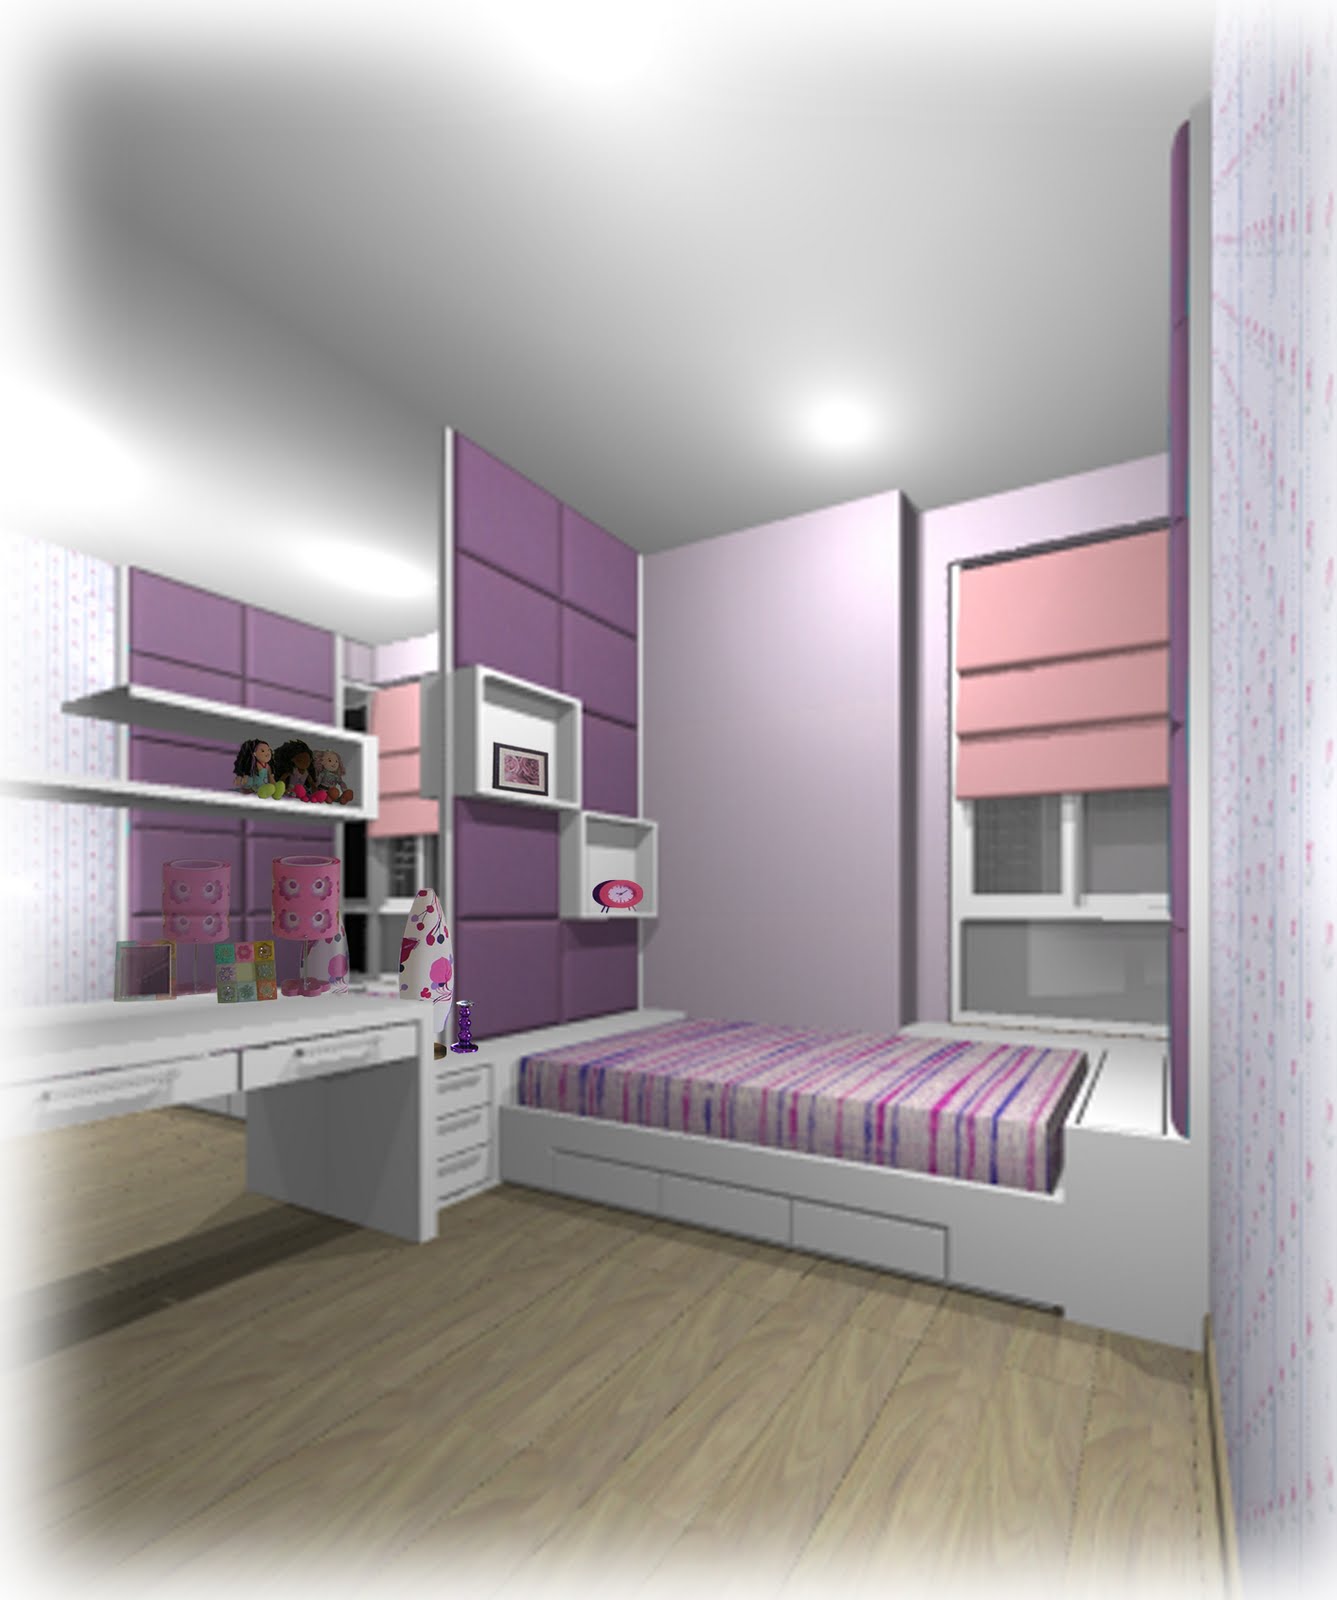 NEXT DESIGN Jasa Minimalis  Furniture  Interior design 